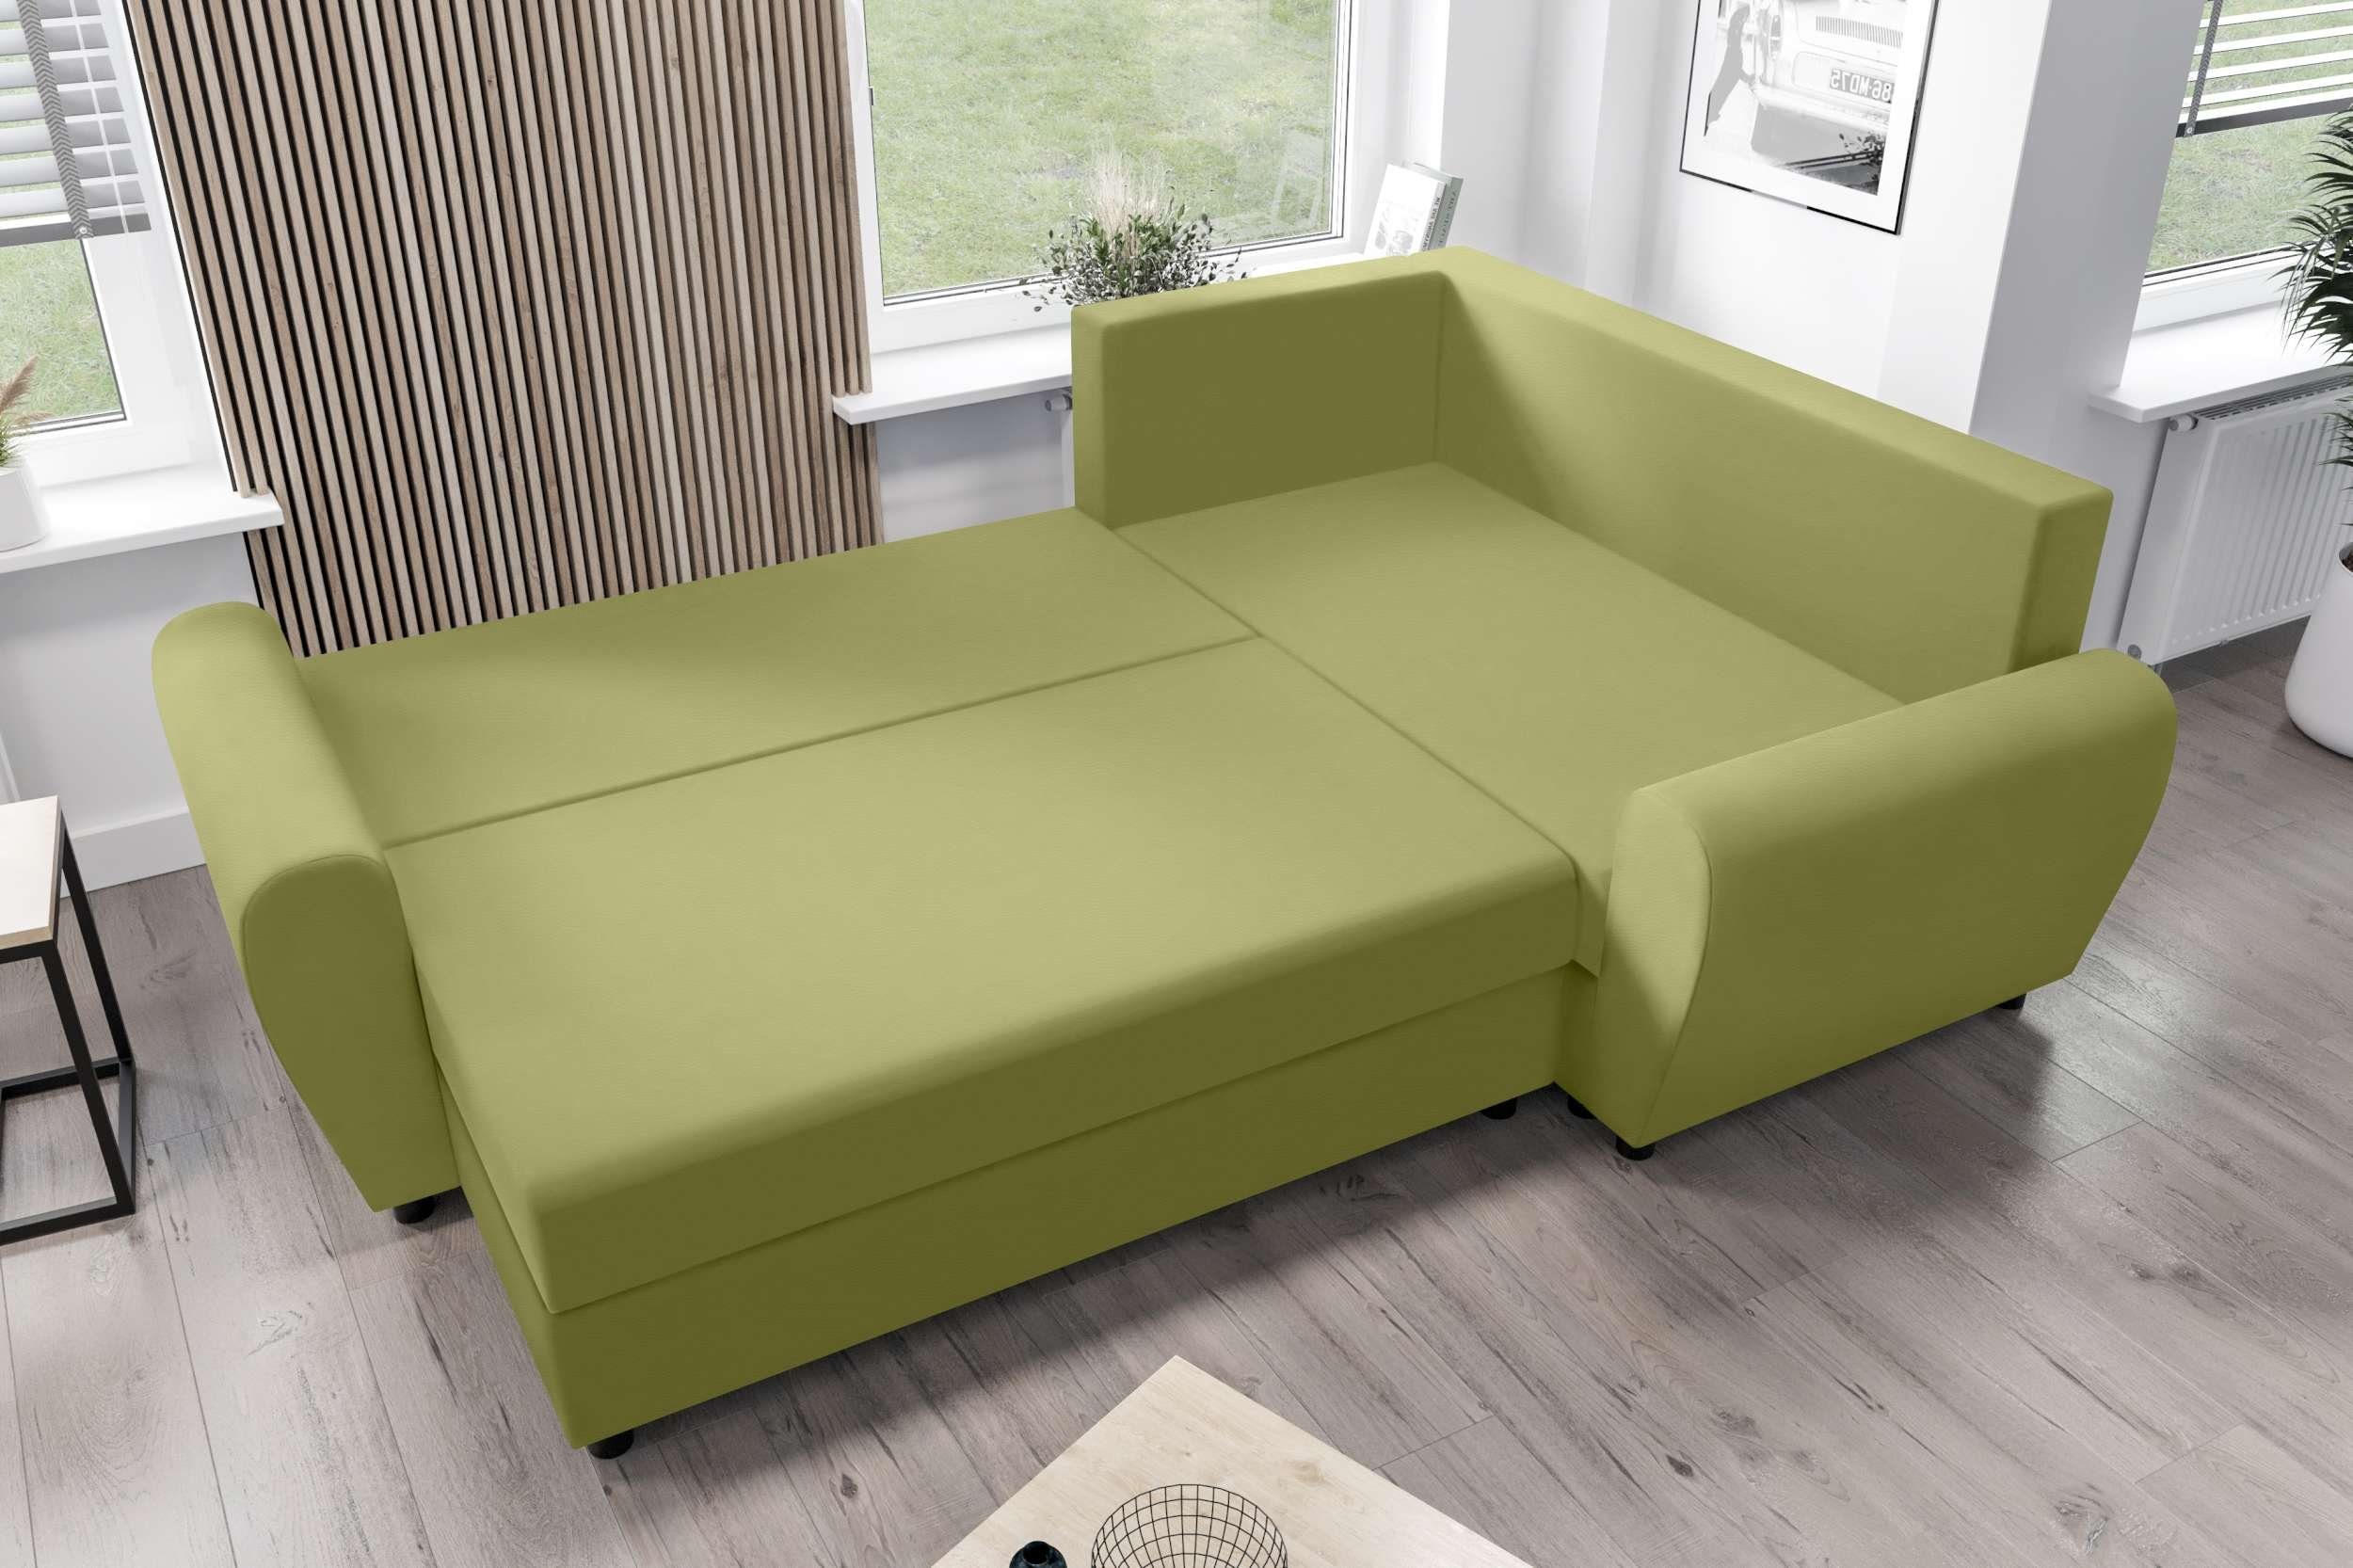 Bettfunktion, Design mit Valence, mit Eckcouch, Stylefy Sitzkomfort, Modern Sofa, L-Form, Bettkasten, Ecksofa